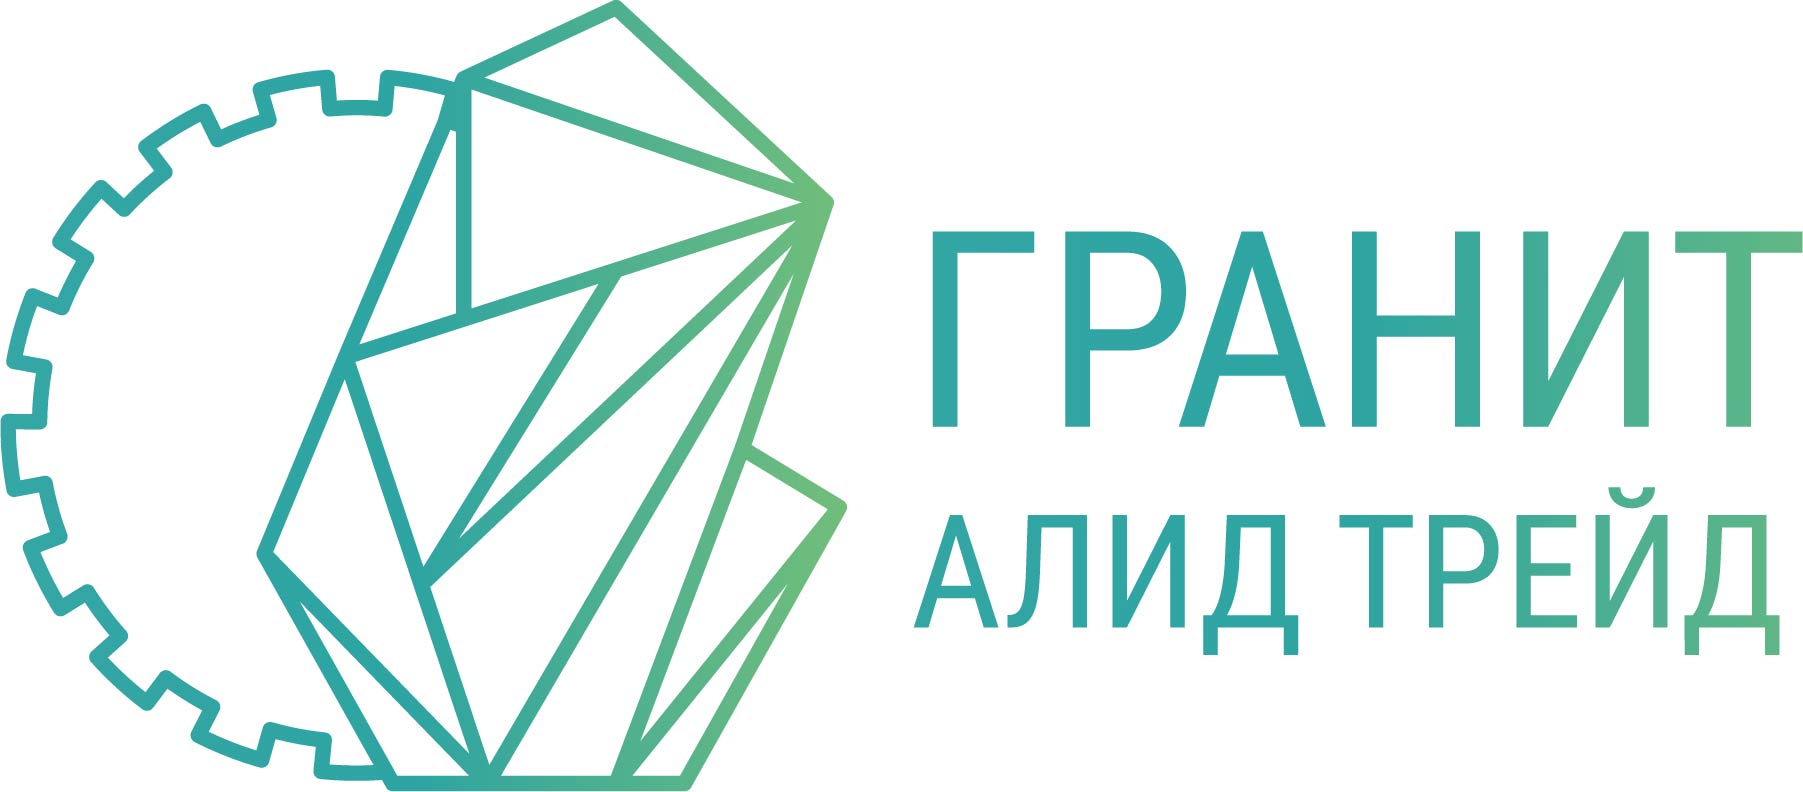 ТОРГОВО-ПРОИЗВОДСТВЕННАЯ КОМПАНИЯ АЛИД ГРАНИТ ТРЕЙД Логотип(logo)